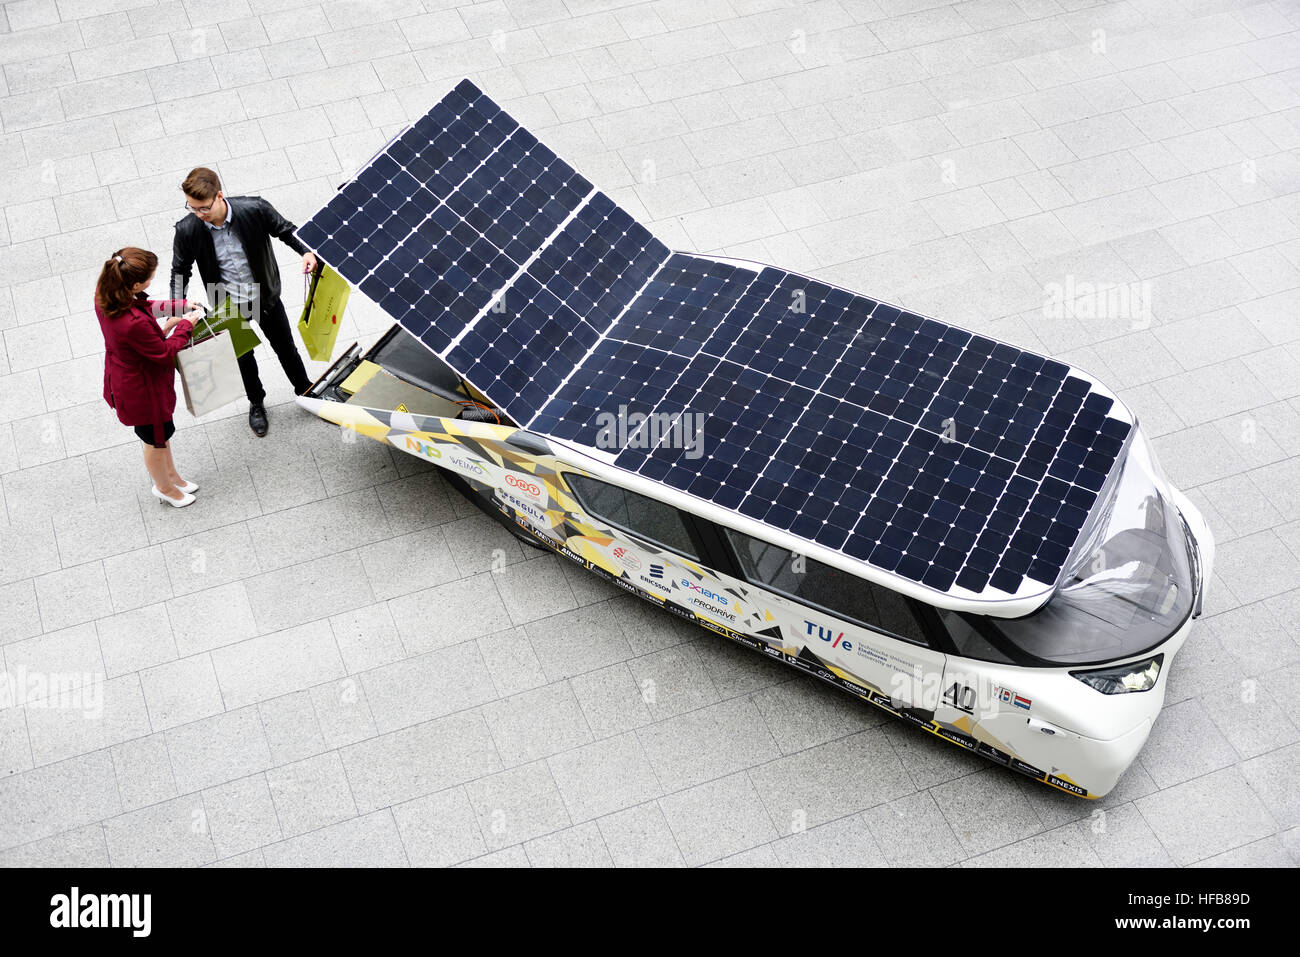 Stella Lux, l'energia positiva di famiglia auto solare da olandese Team solare Eindhoven, vincitore nel 2015 World Solar Challenge. Foto Stock